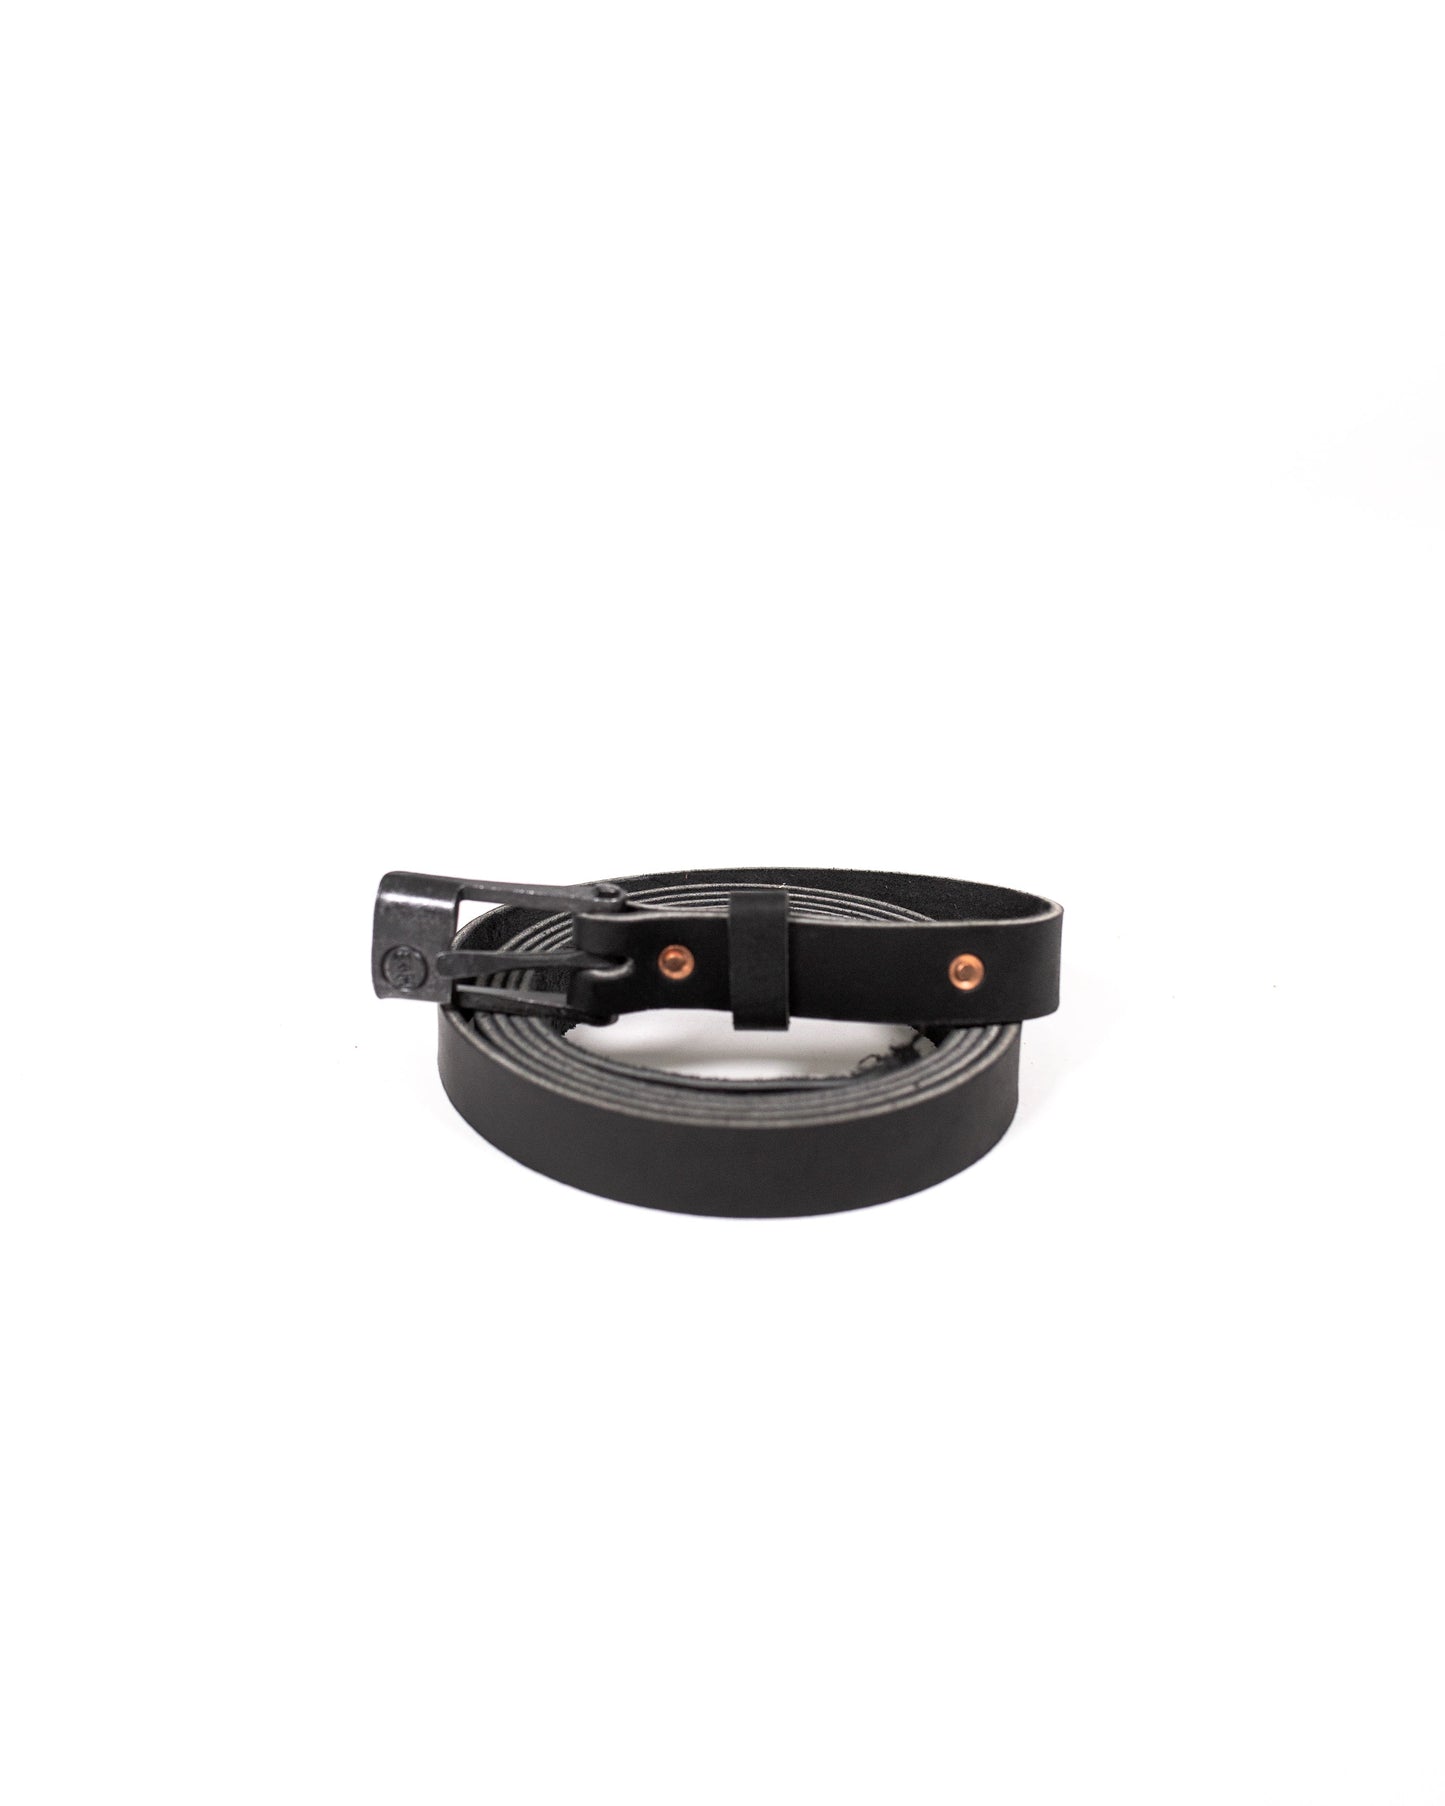 Cloverdale Black Steel Belt - 1 inch width